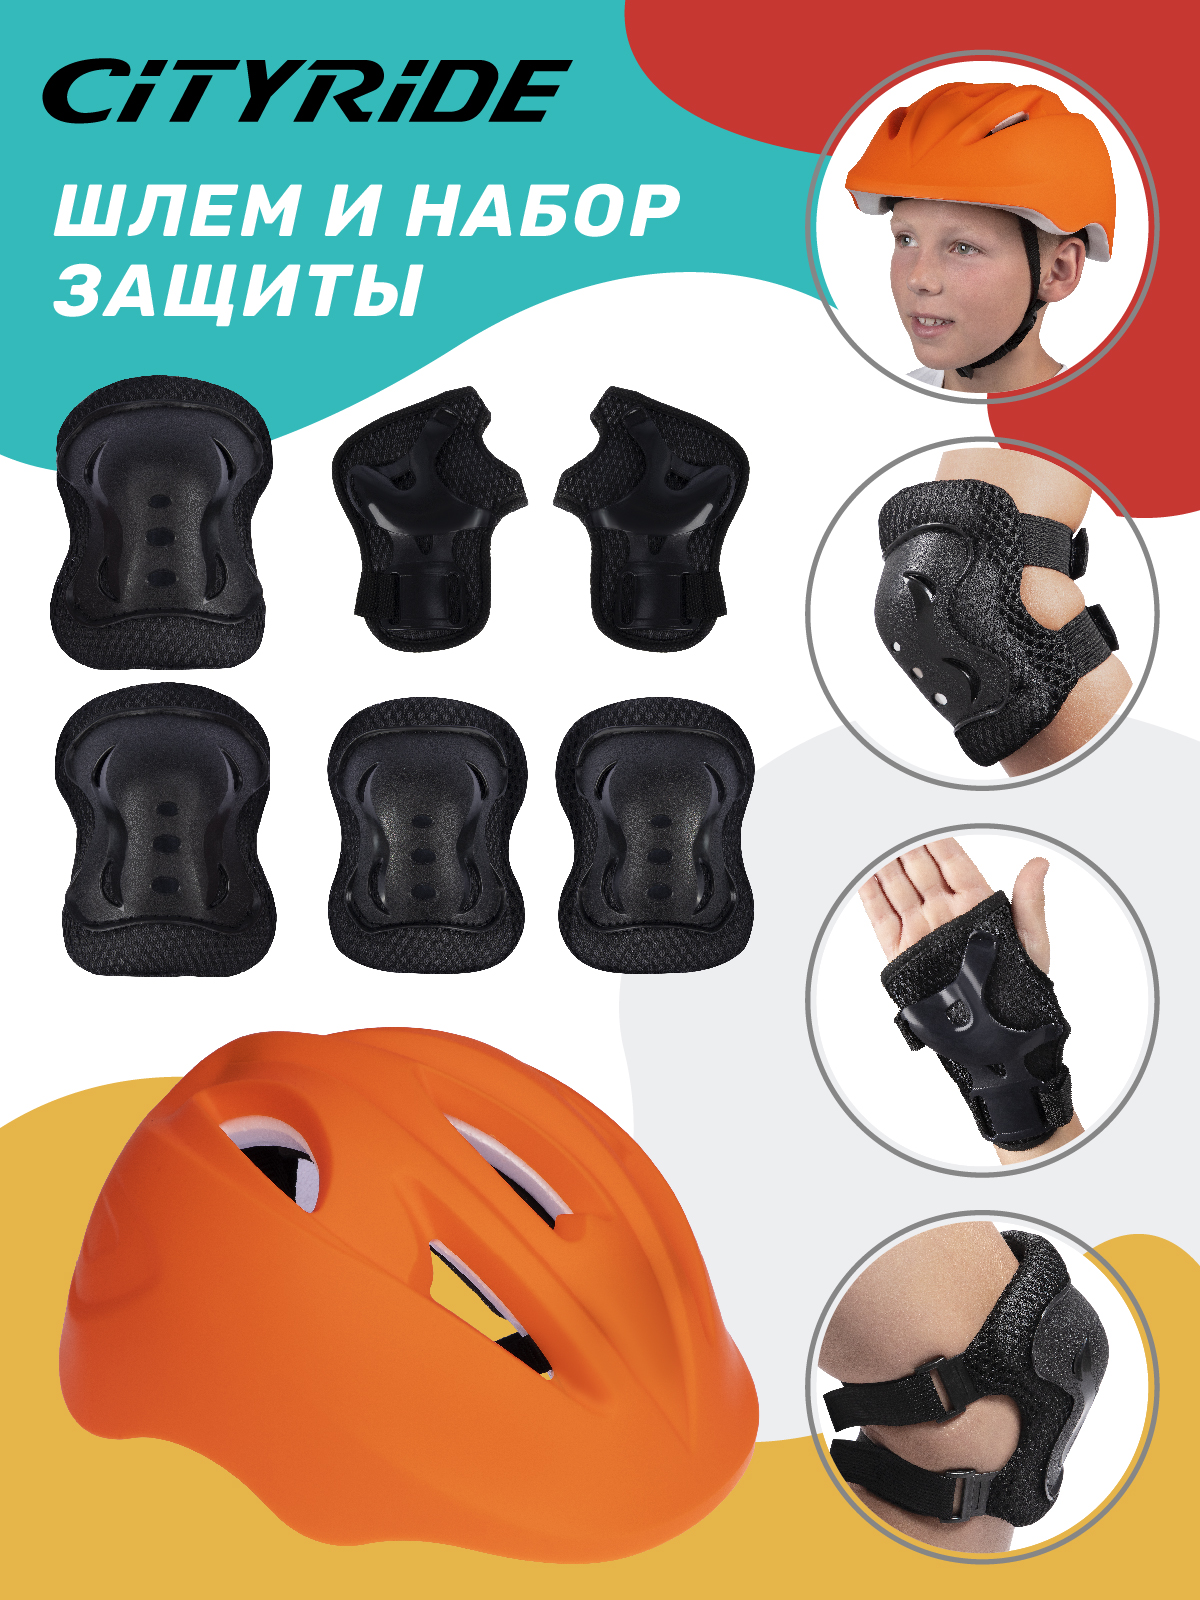 Комплект шлем, спортивная защита для детей ТМ City Ride, размер универсальный, JB0211562 комплект защиты детский city ride шлем размер универсальный jb0211561